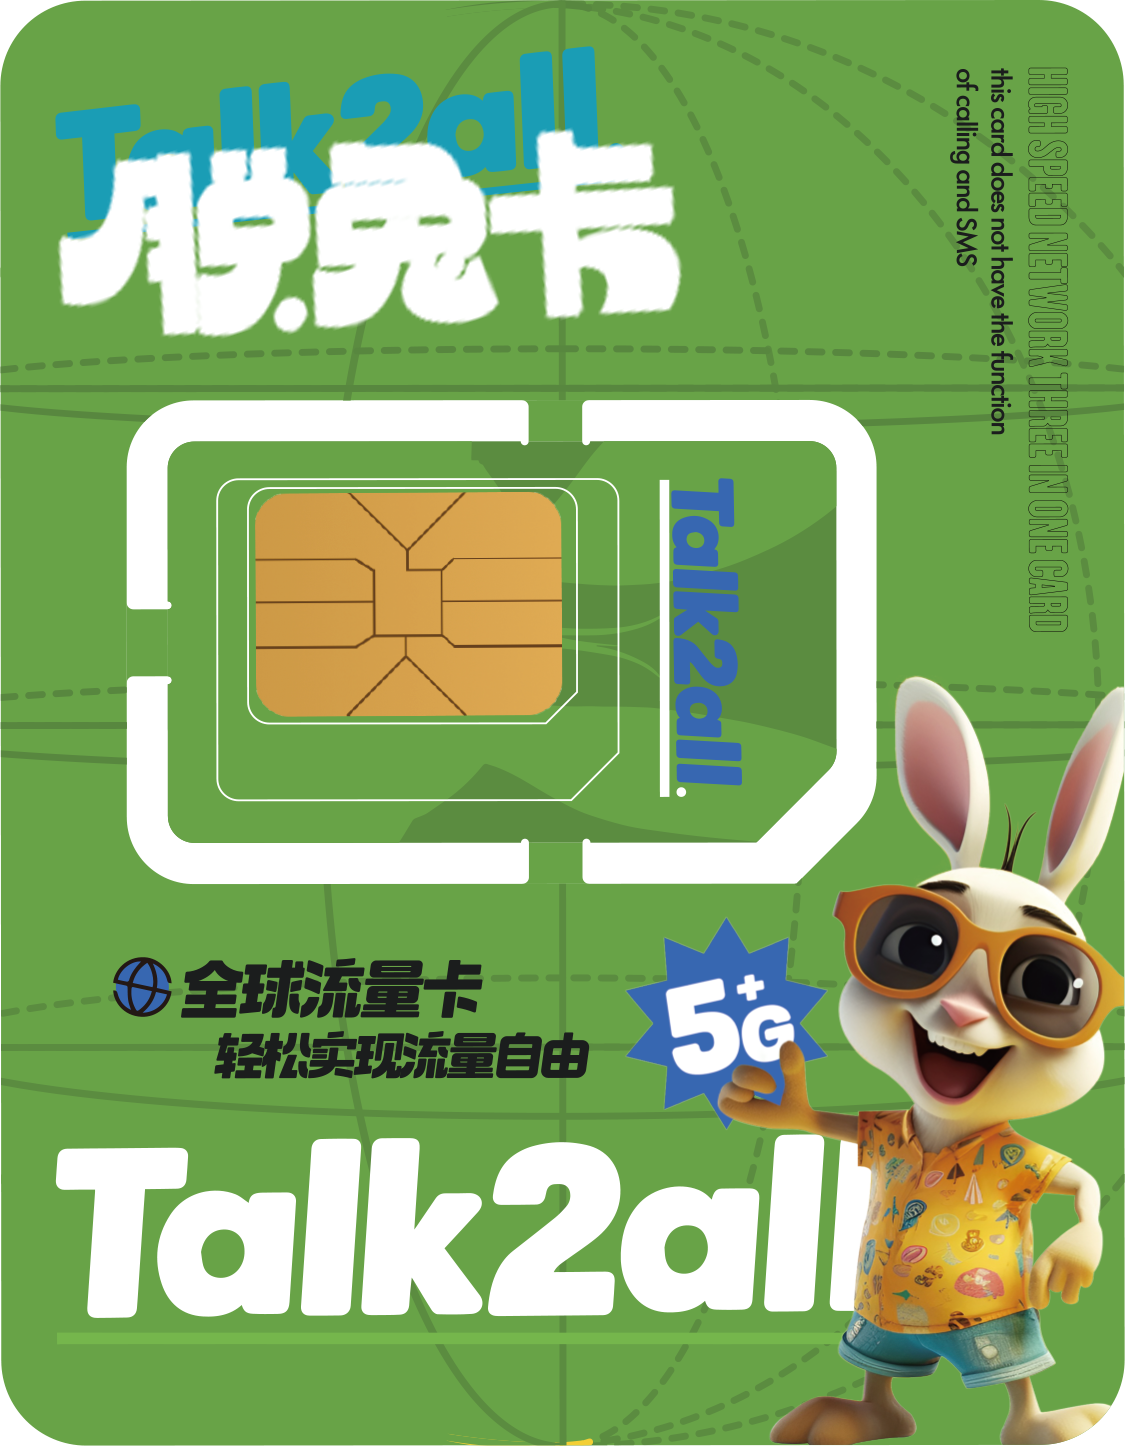 Talk2all全球卡